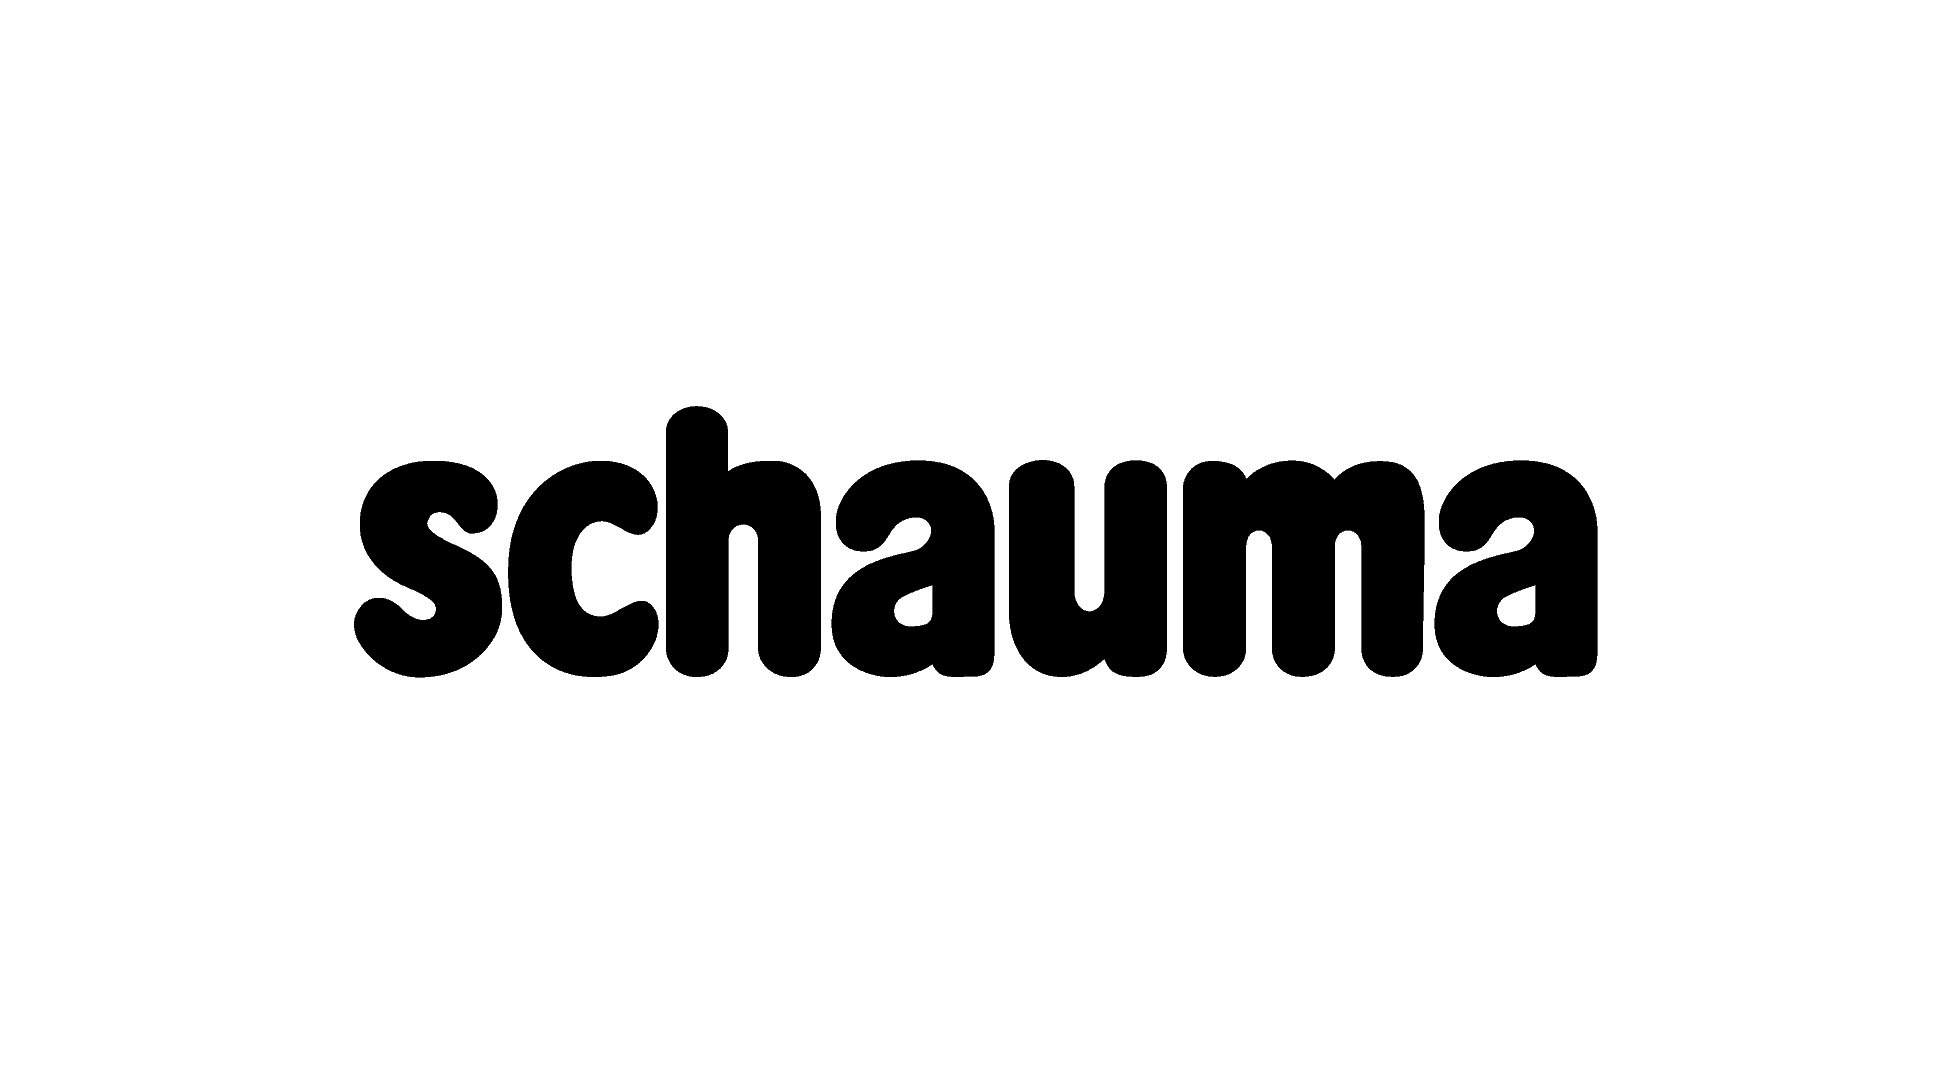 Schauma Logo